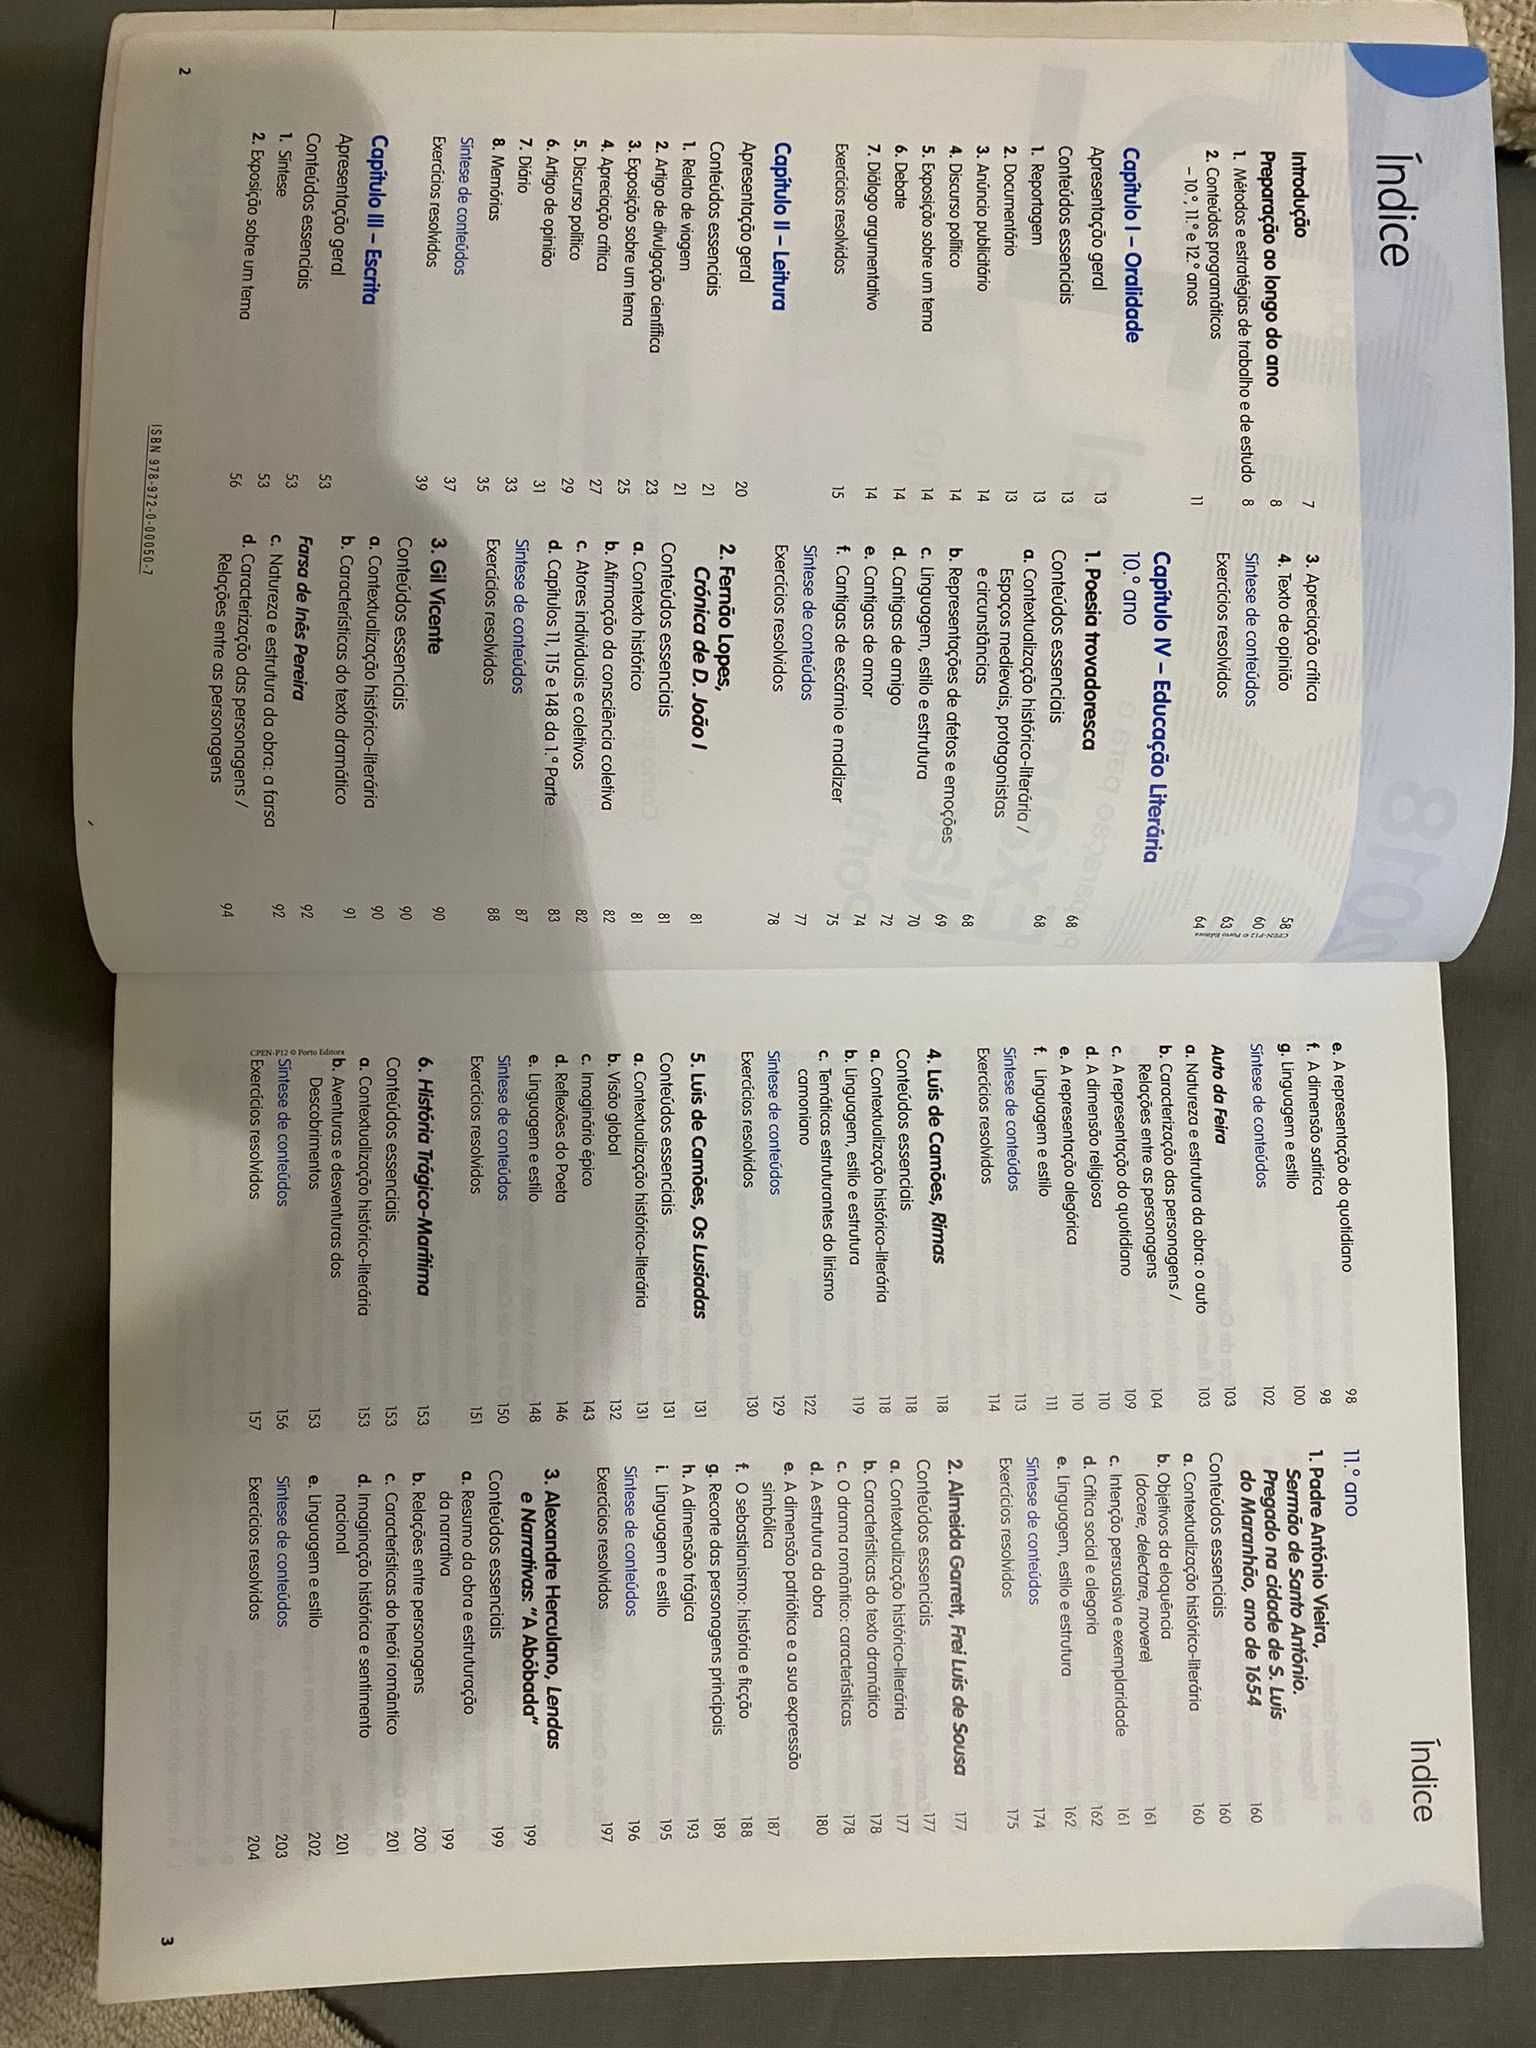 Livro Exame Final Português 12° ano